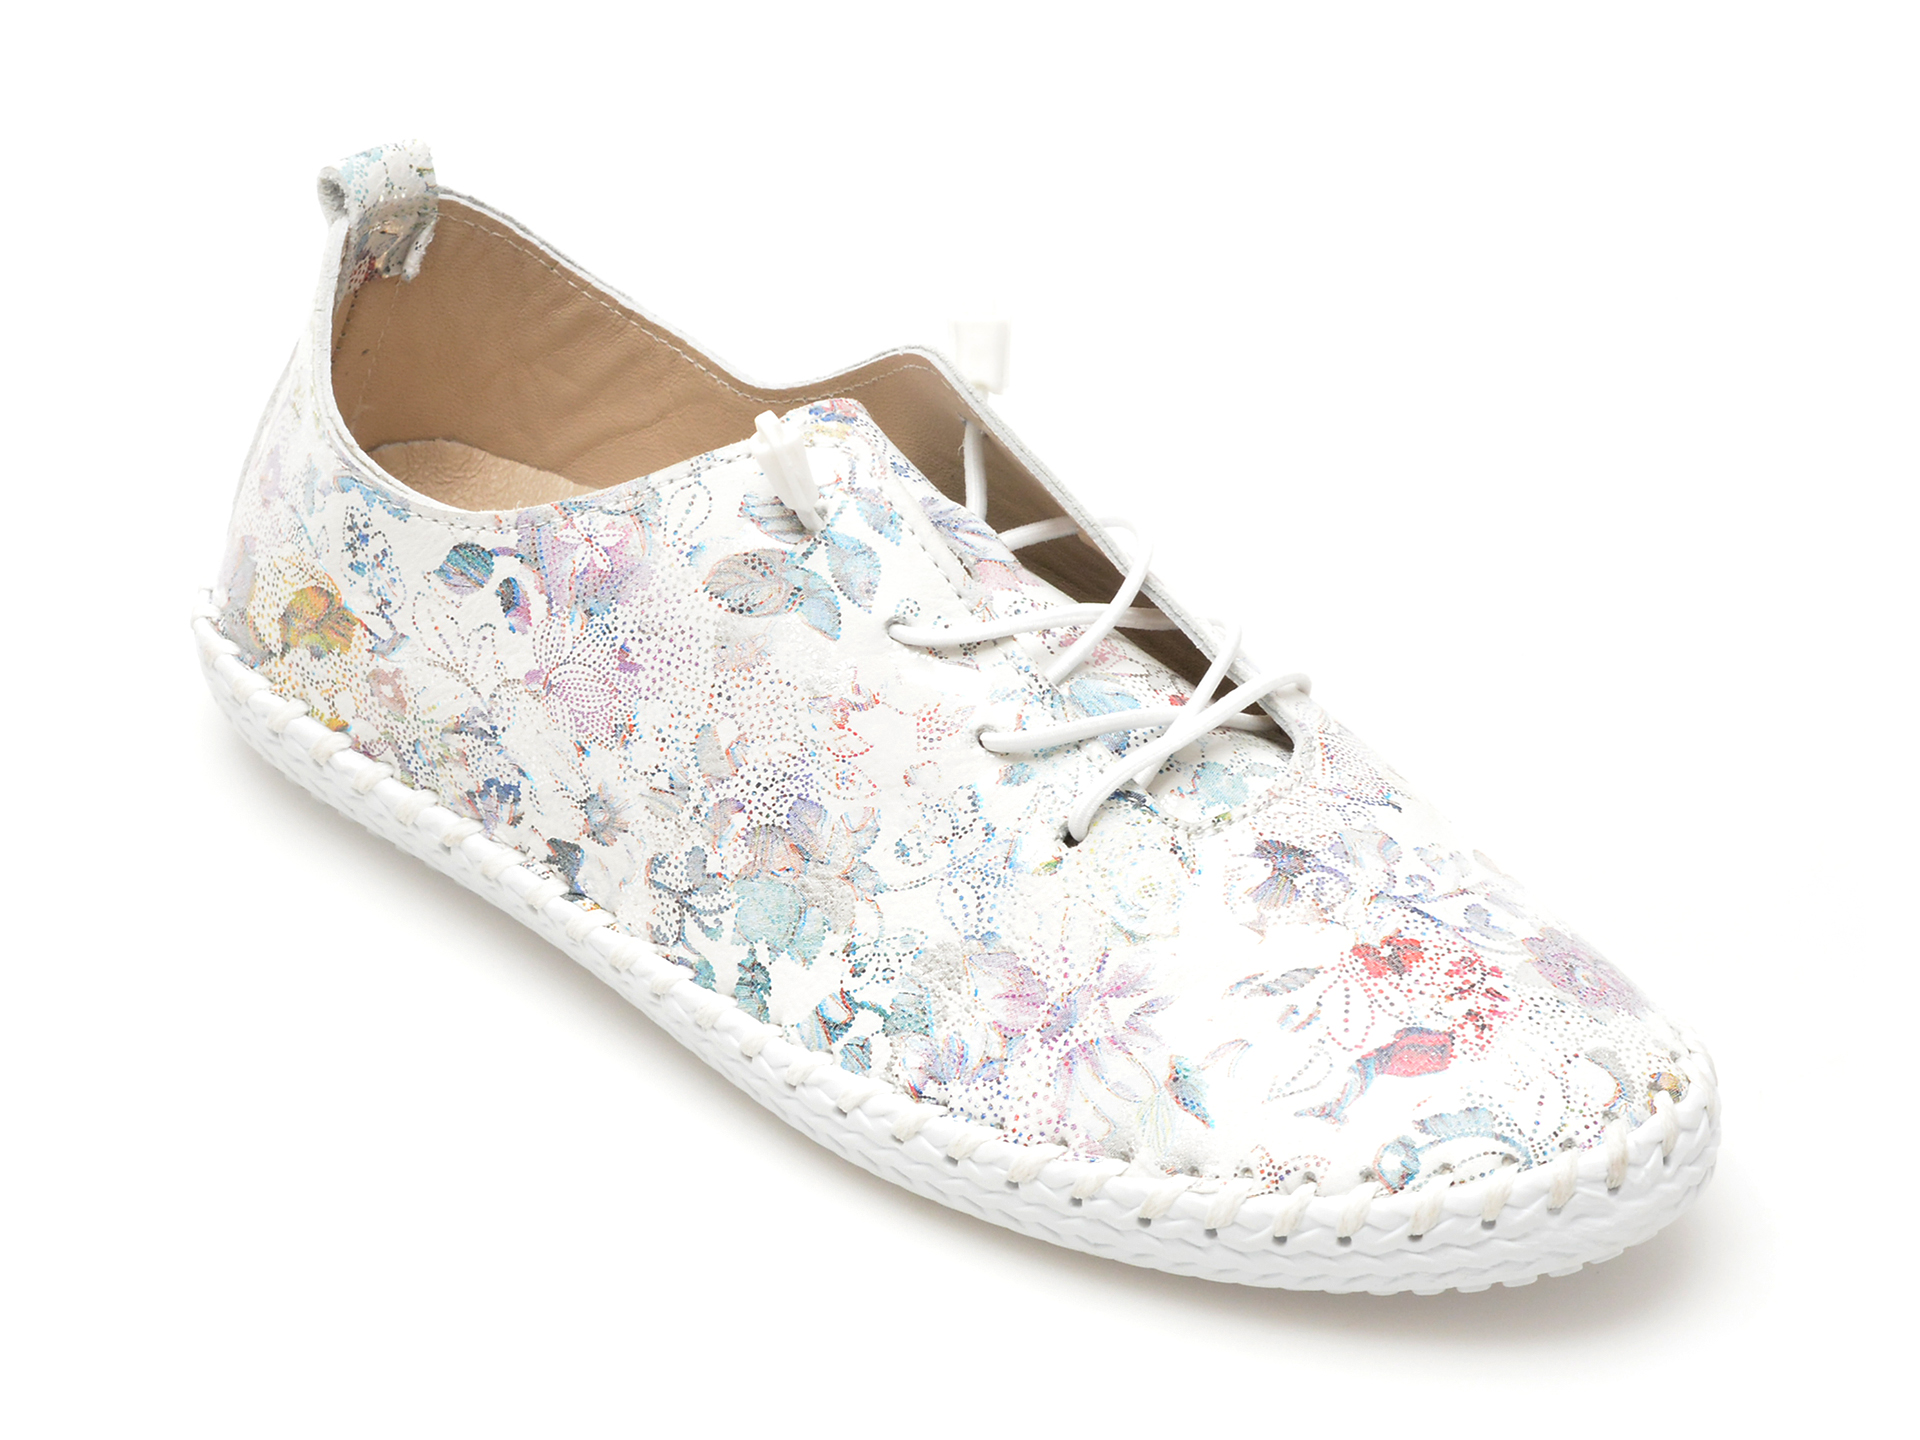 Pantofi casual FLAVIA PASSINI albi, 2201622, din piele naturala